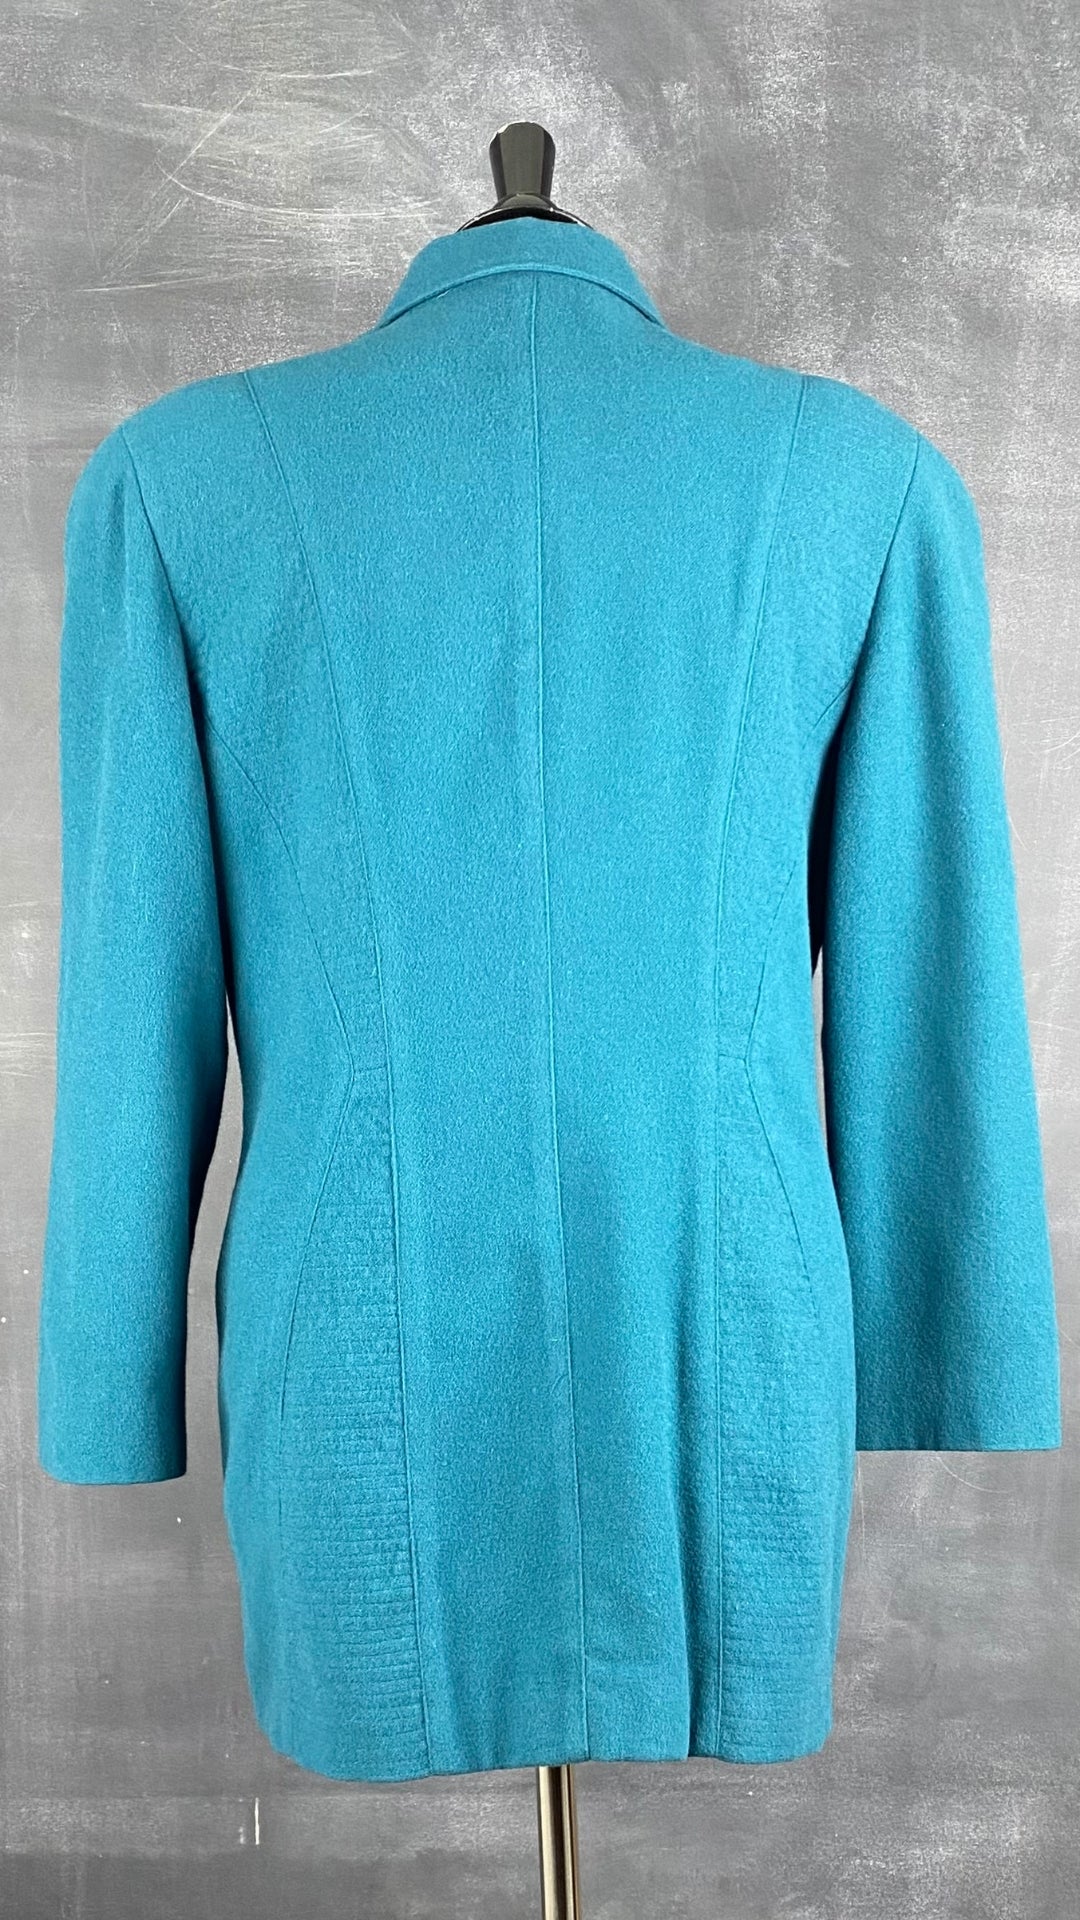 Blazer hivernal sarcelle en mélange de laine et cachemire Jean-Claude Poitras, taille 10. Vue de dos.